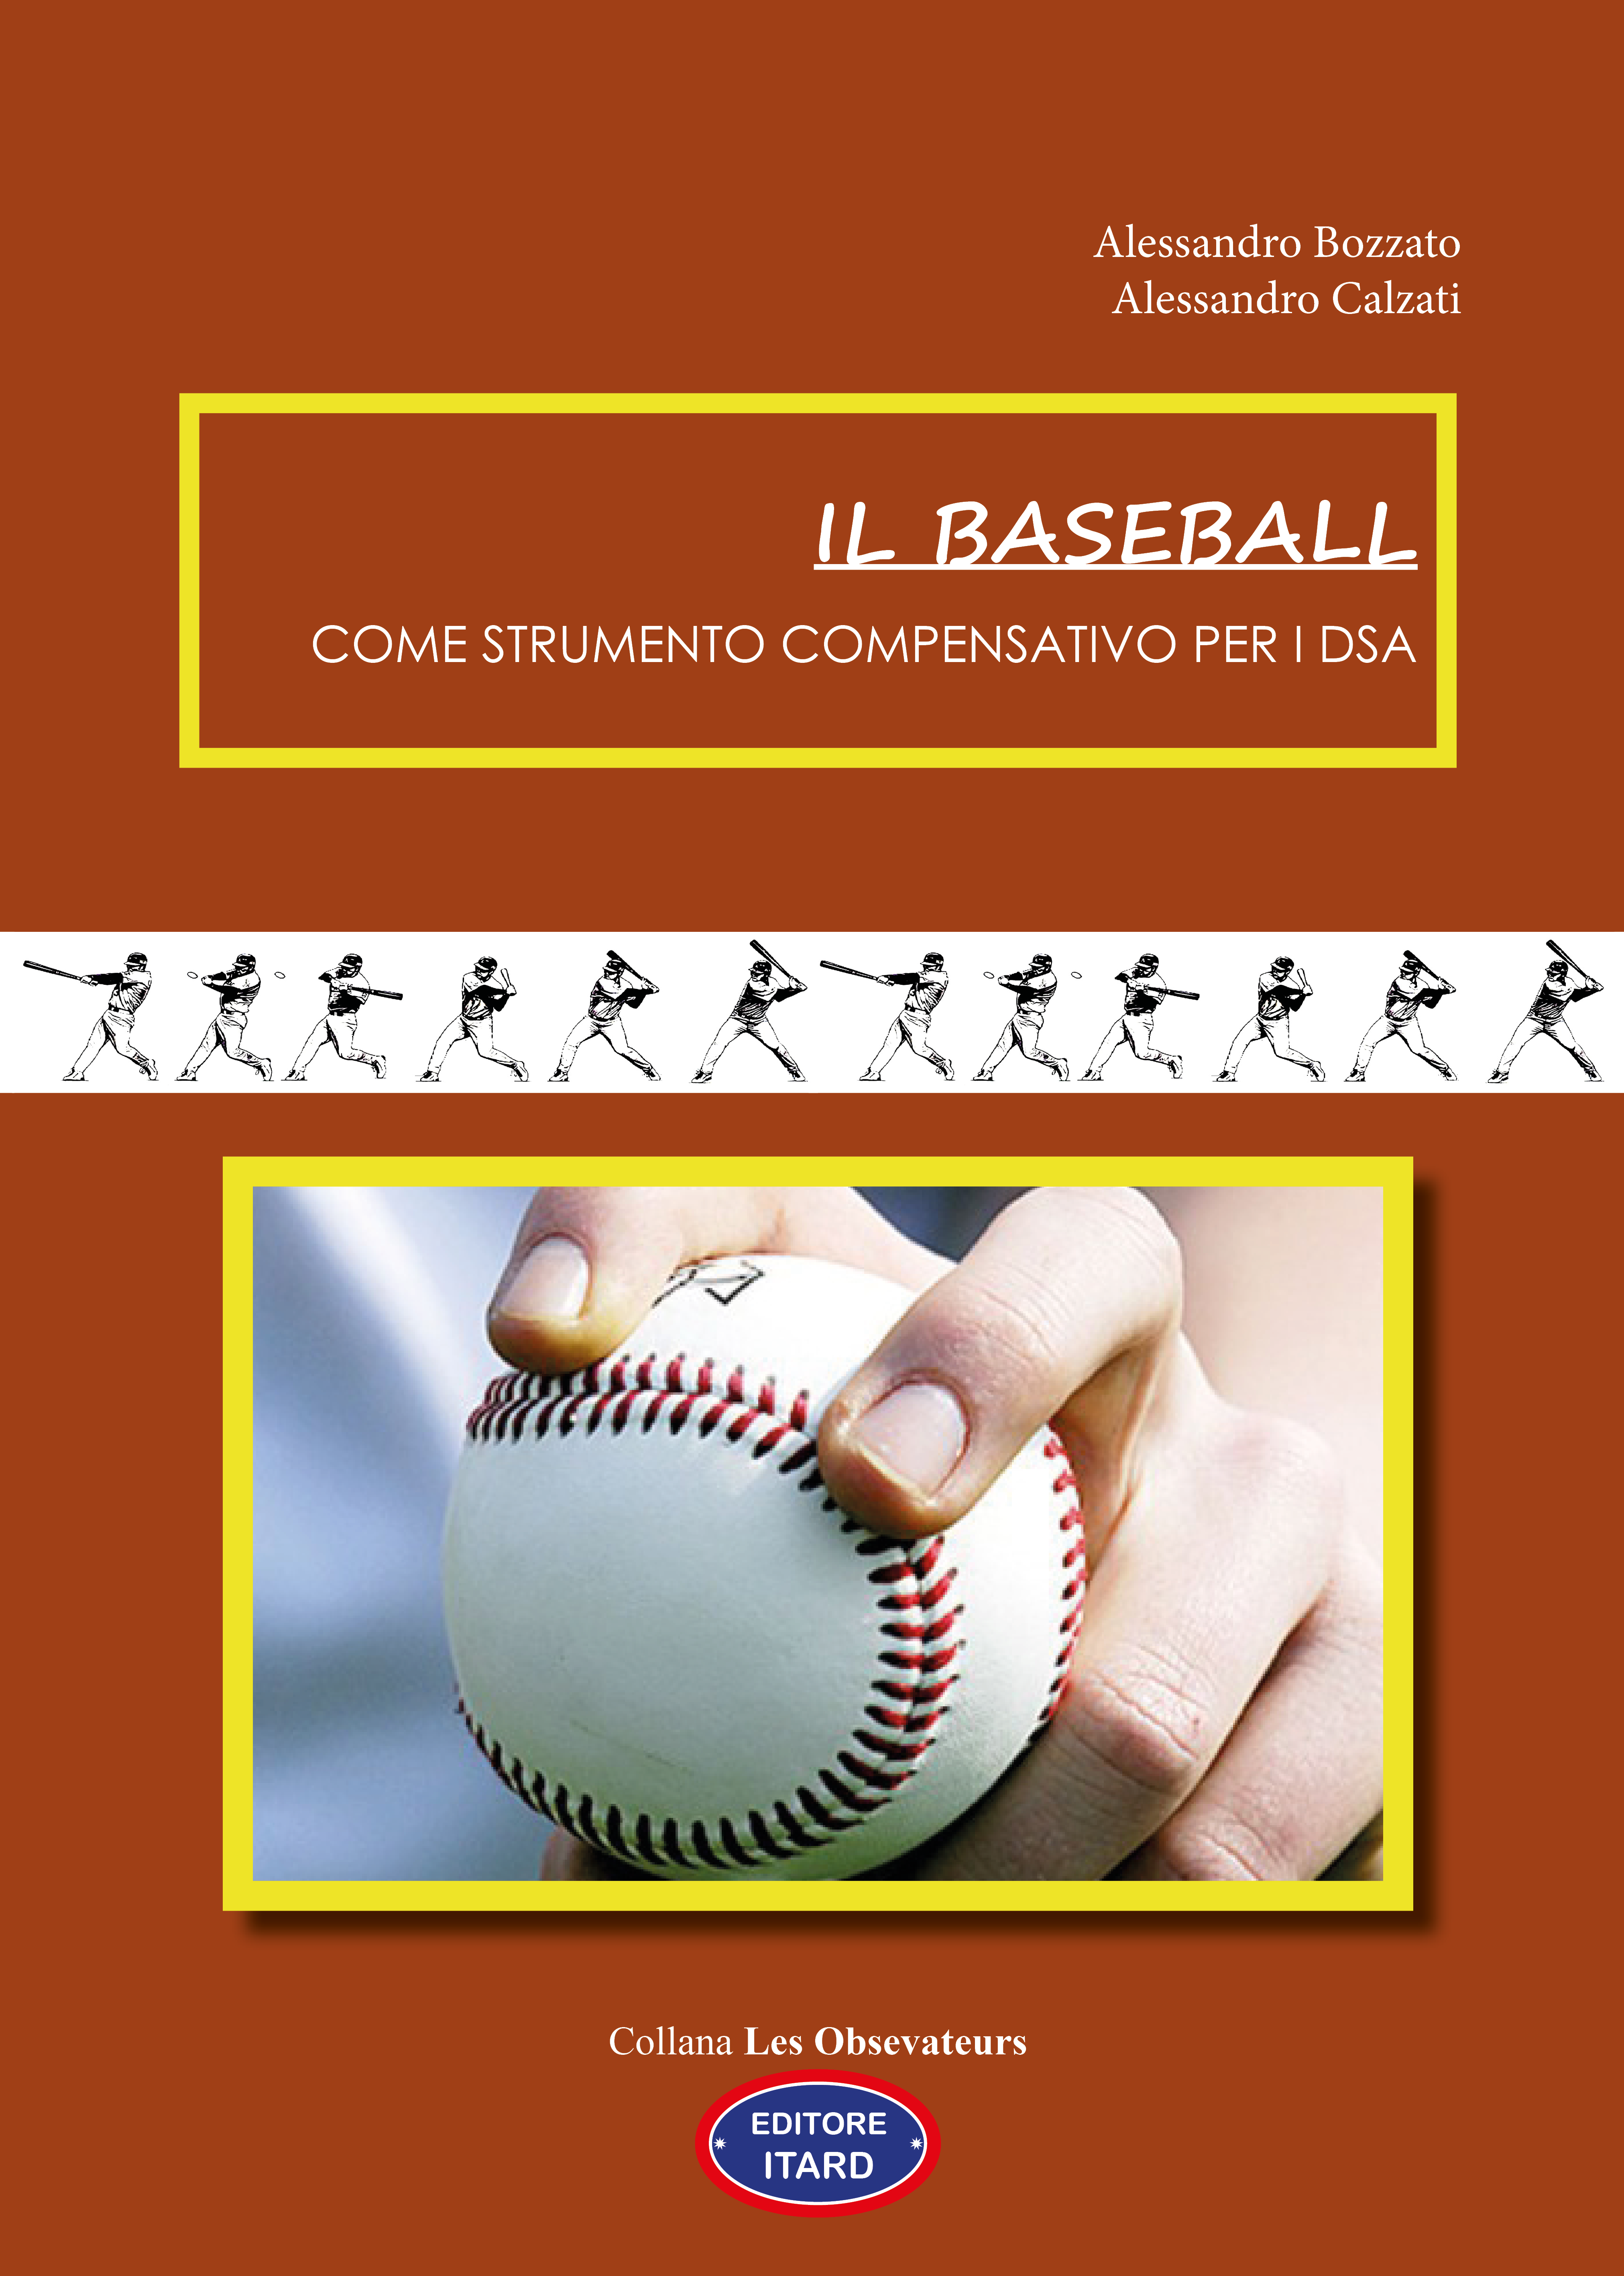 Il baseball come strumento compensativo per i DSA